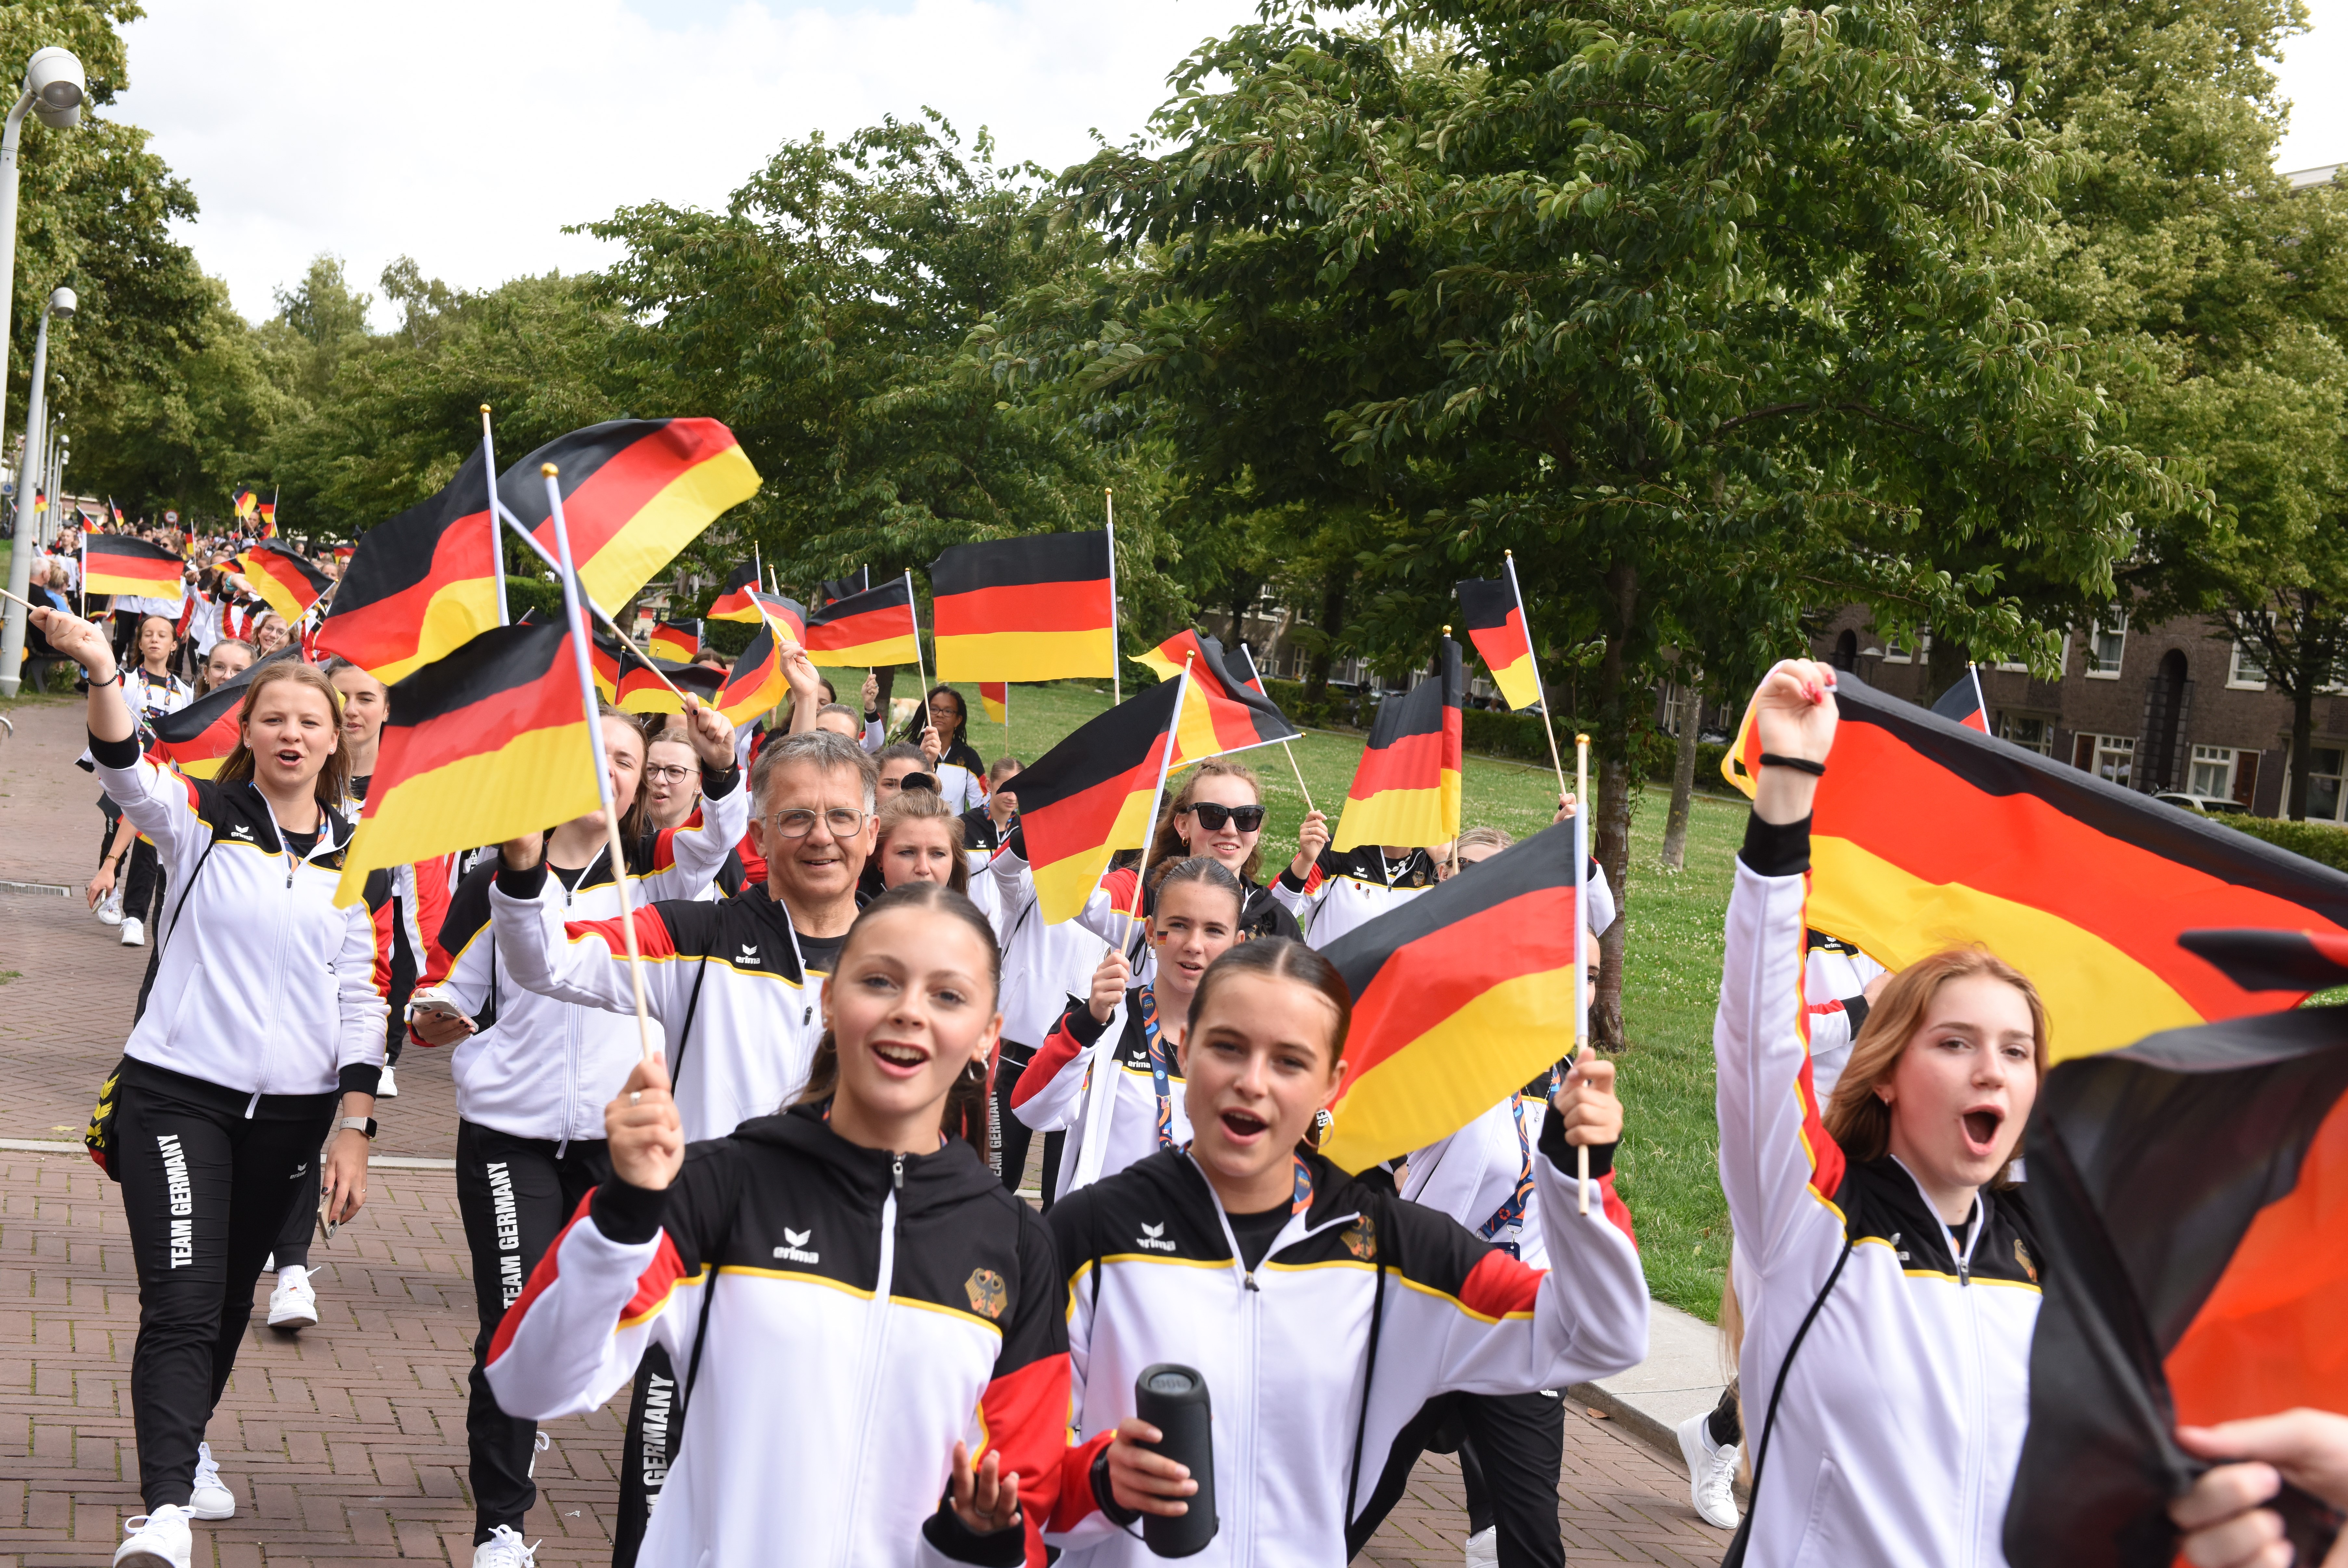 Die deutsche Delegation auf dem Weg zur Eröffnungsfeier | Bildquelle: Norbert Raufer